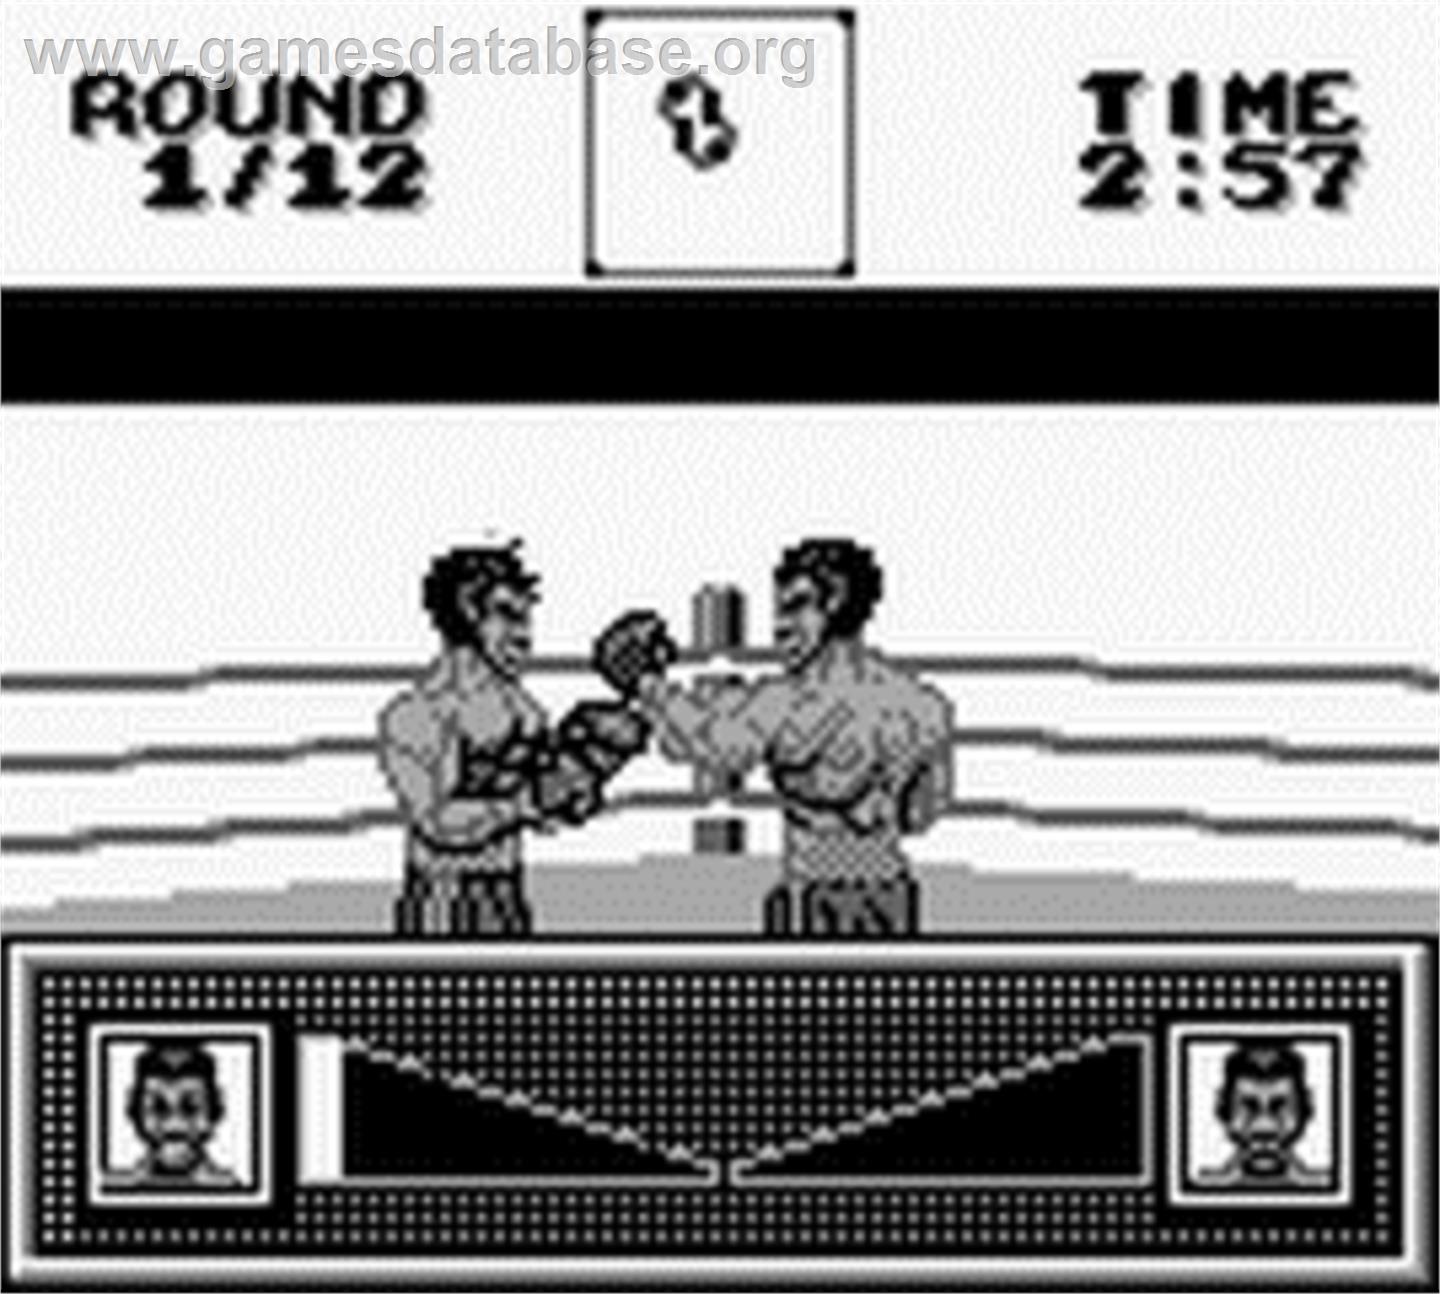 Riddick Bowe Boxing - Nintendo Game Boy - Artwork - In Game